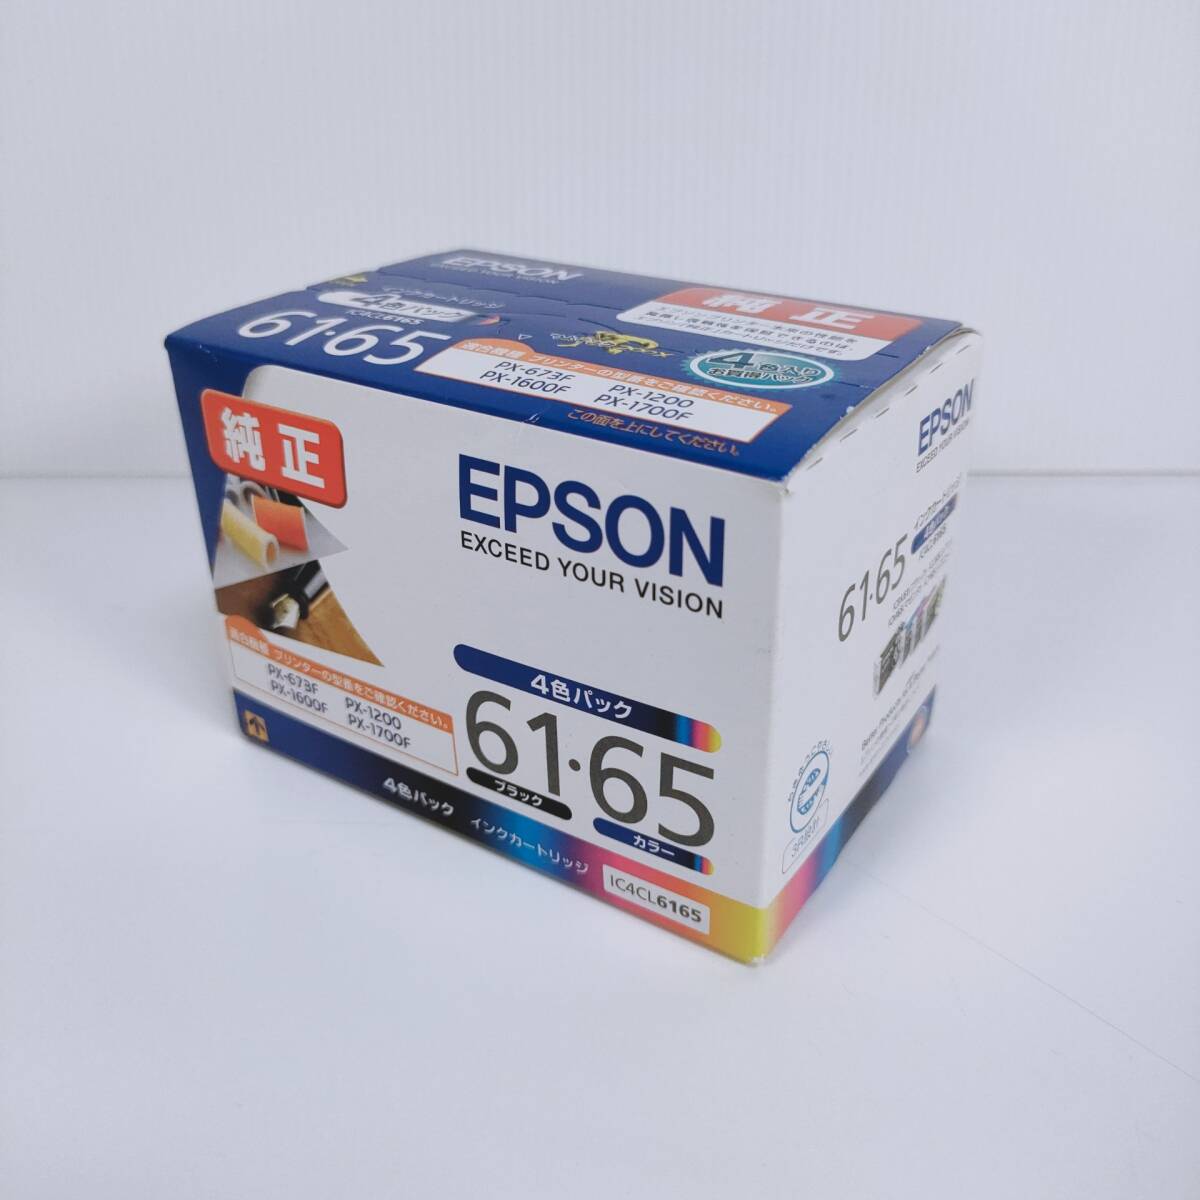 【未使用 未開封】EPSON エプソン 純正 インクカートリッジ 61 65 4色パック IC4CL6165 PX-673F PX-1200 PX-1600F PX-1700F 期限201811 _画像1